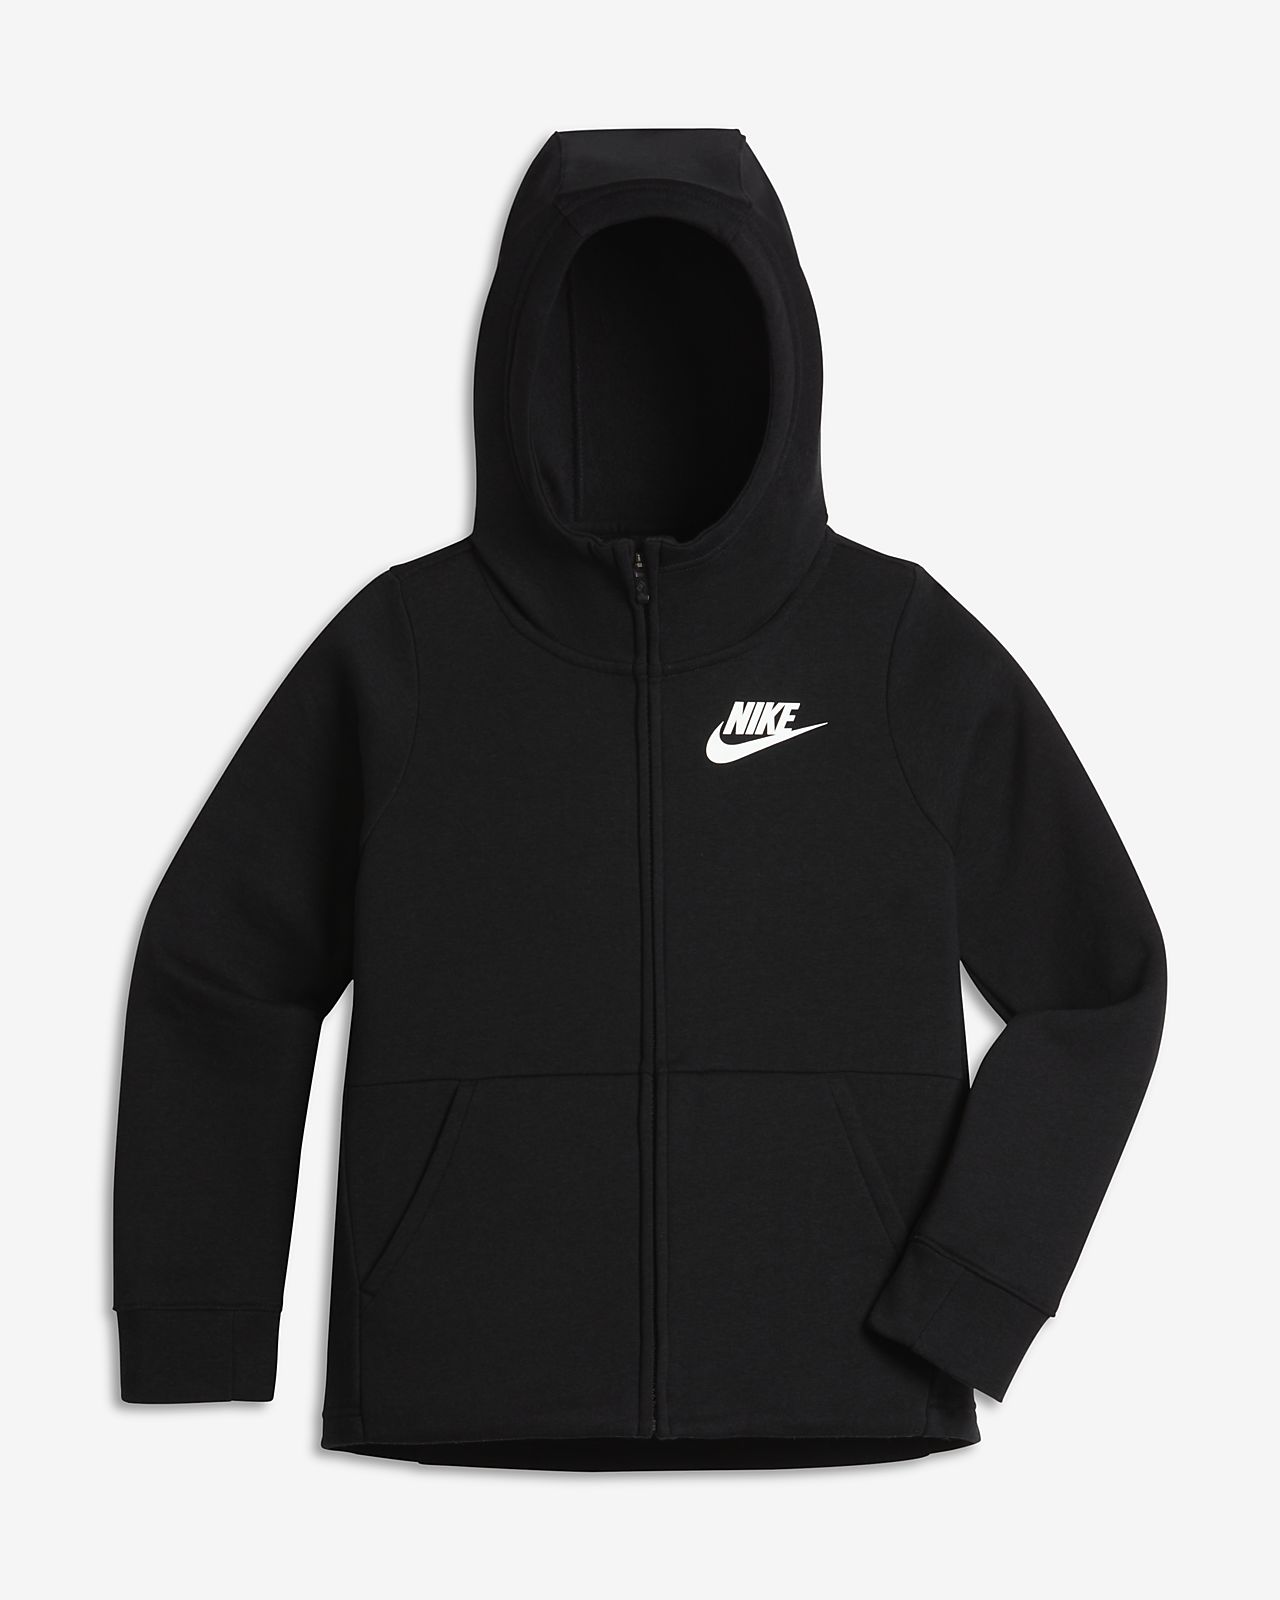 black zip nike hoodie